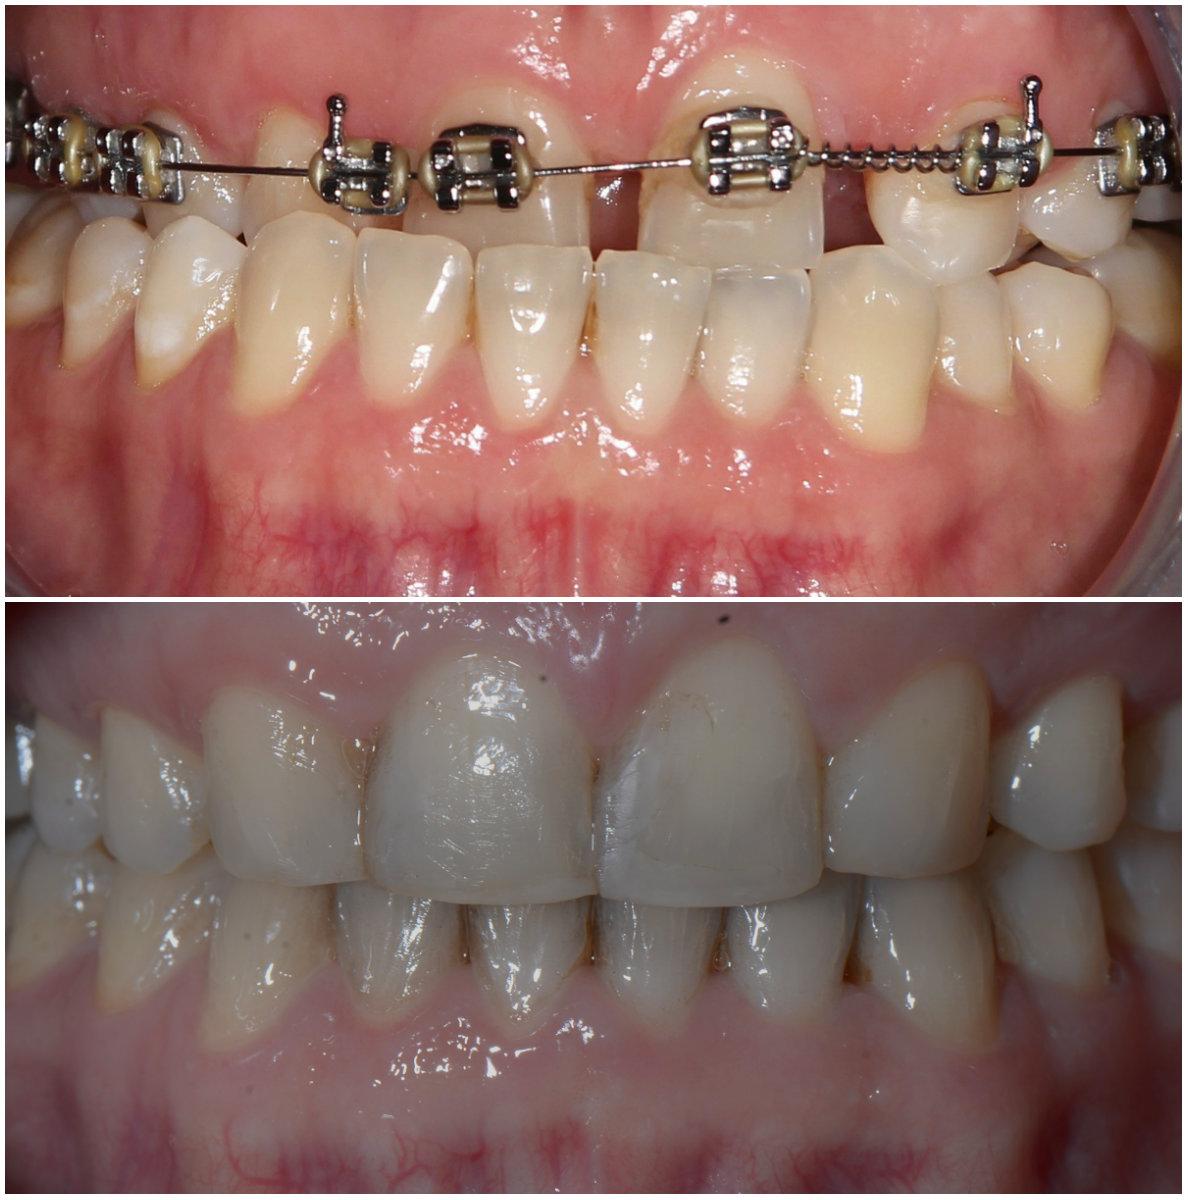 Aparat Ortodontyczny Przed I Po Jakie Sa Efekty Jego Noszenia Polki Pl